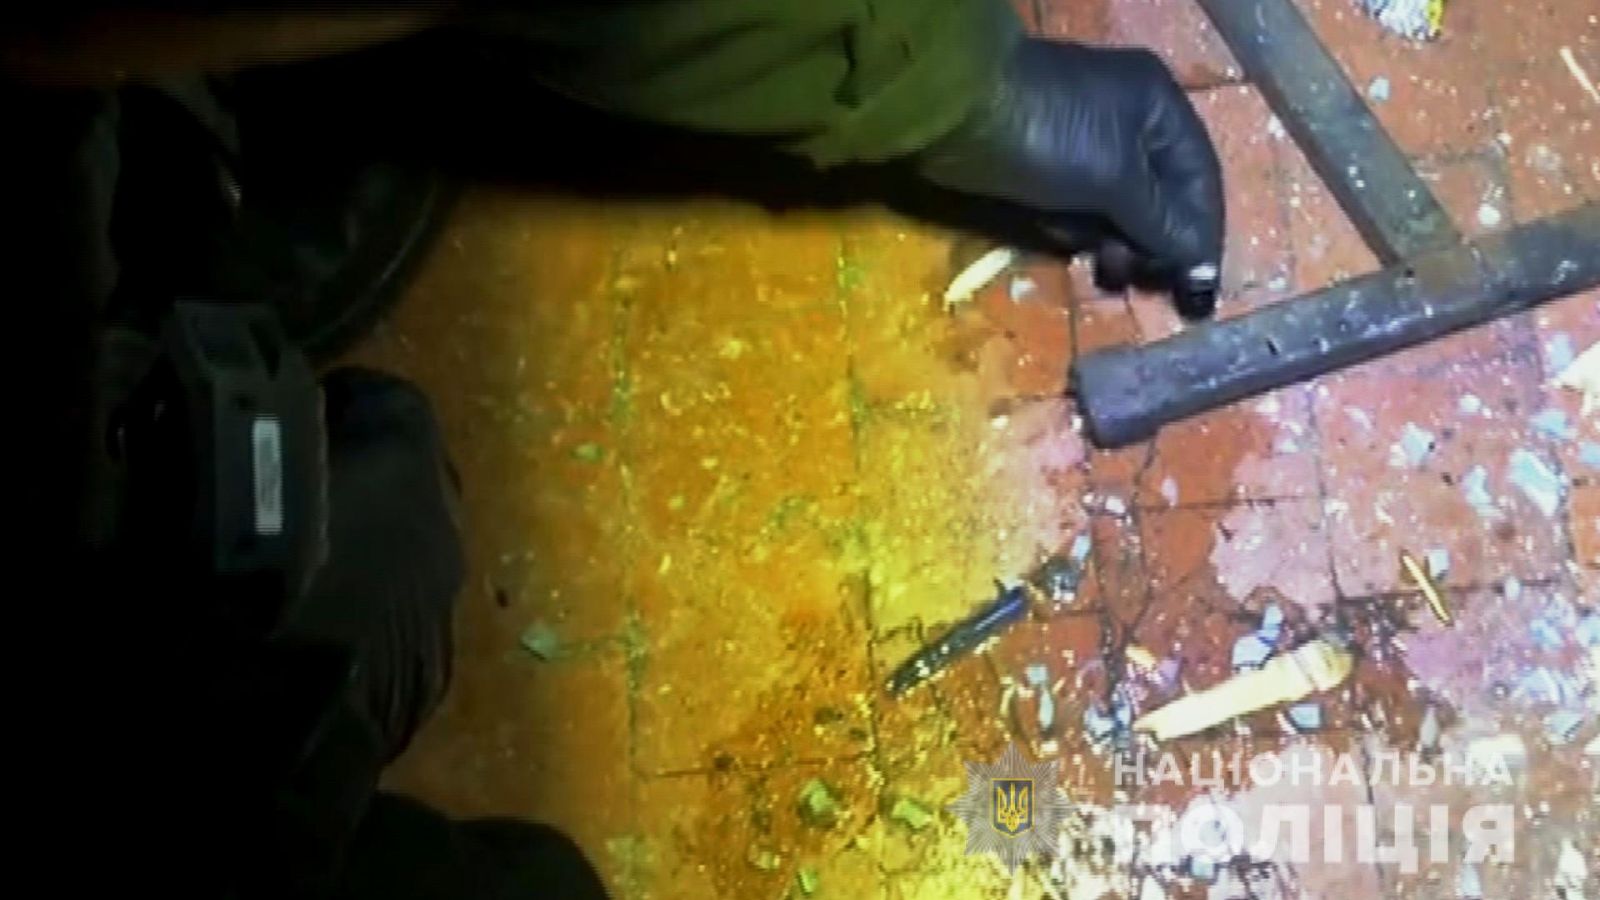  Вибух у гуртожитку в Одесі: 38-річний чоловік кинув гранату, фото: нацполіція